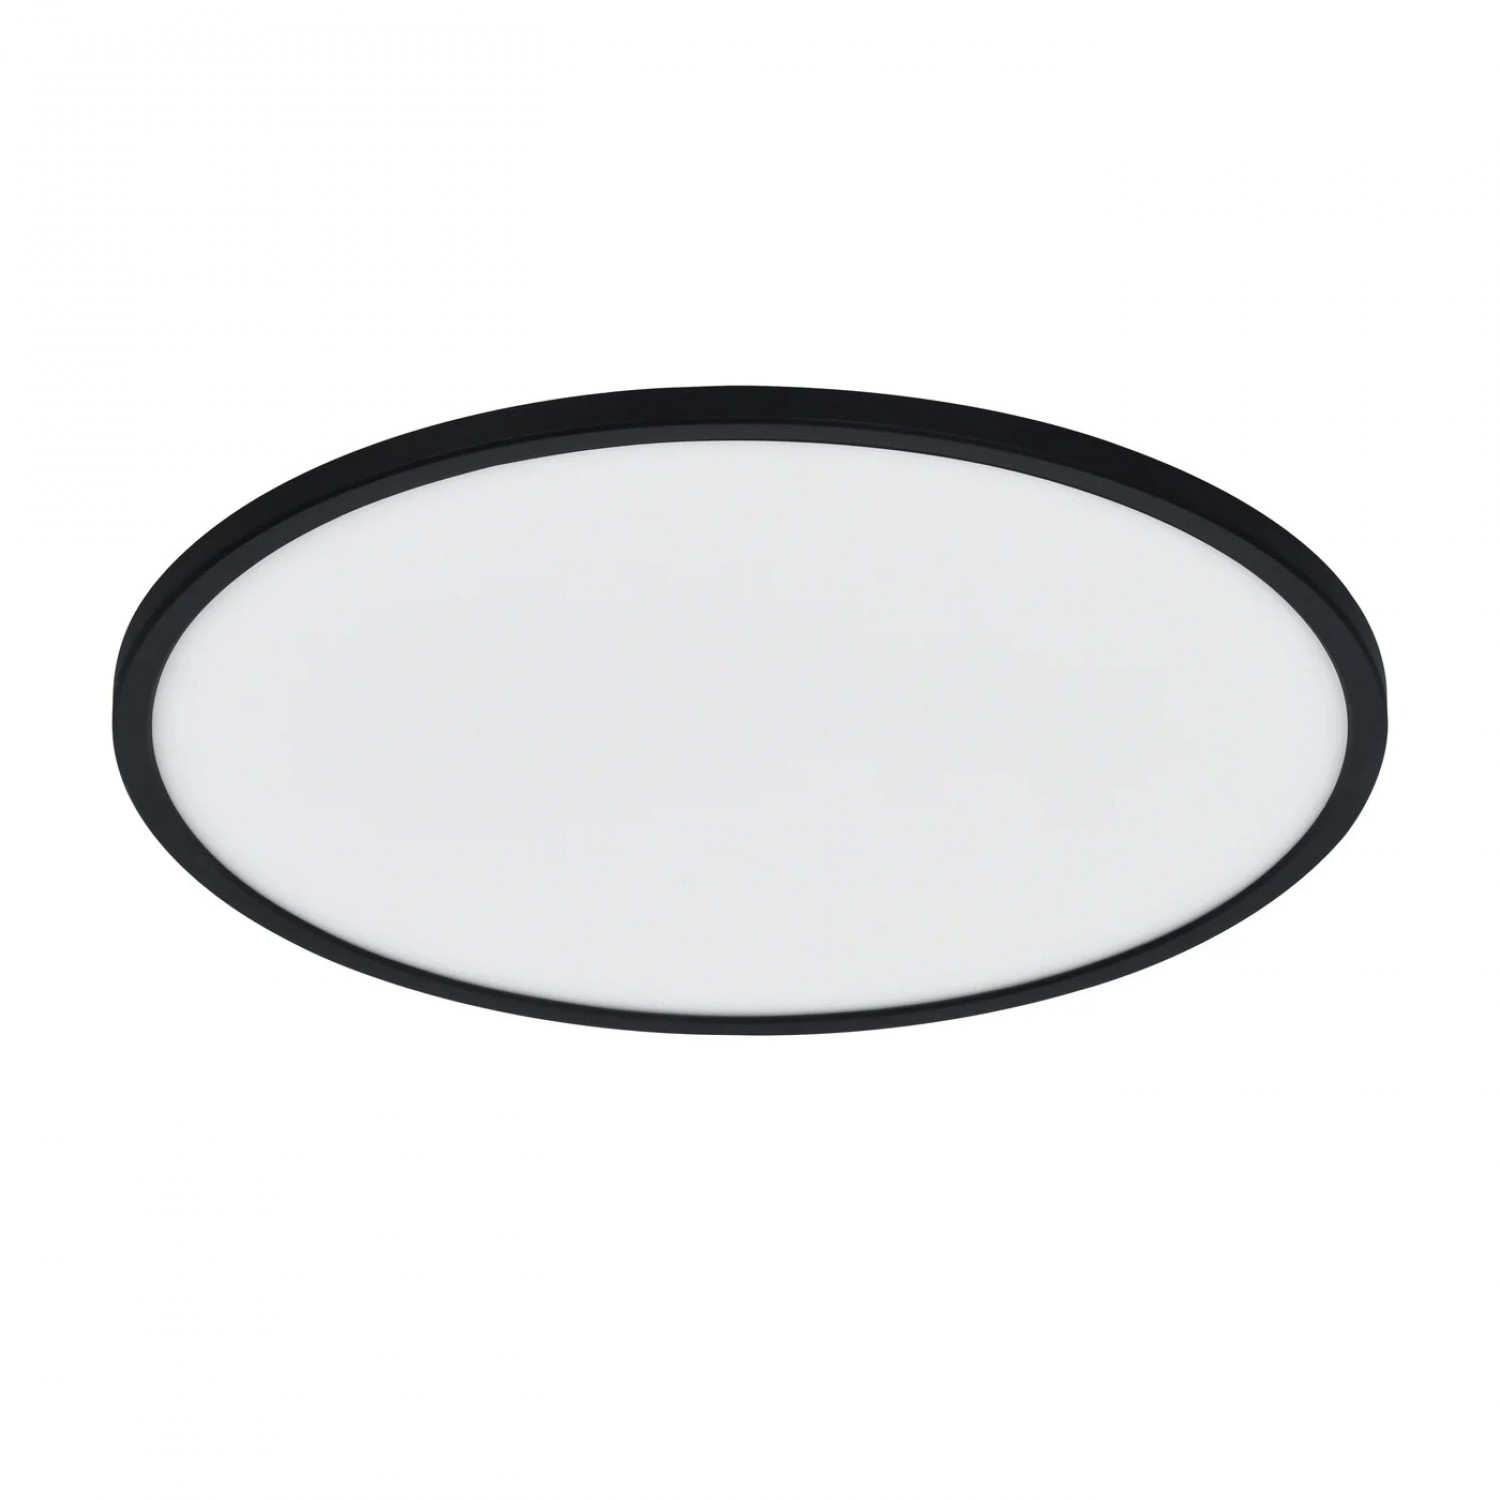 Потолочный светильник Nordlux OJA 60 Smart light black 2015146103